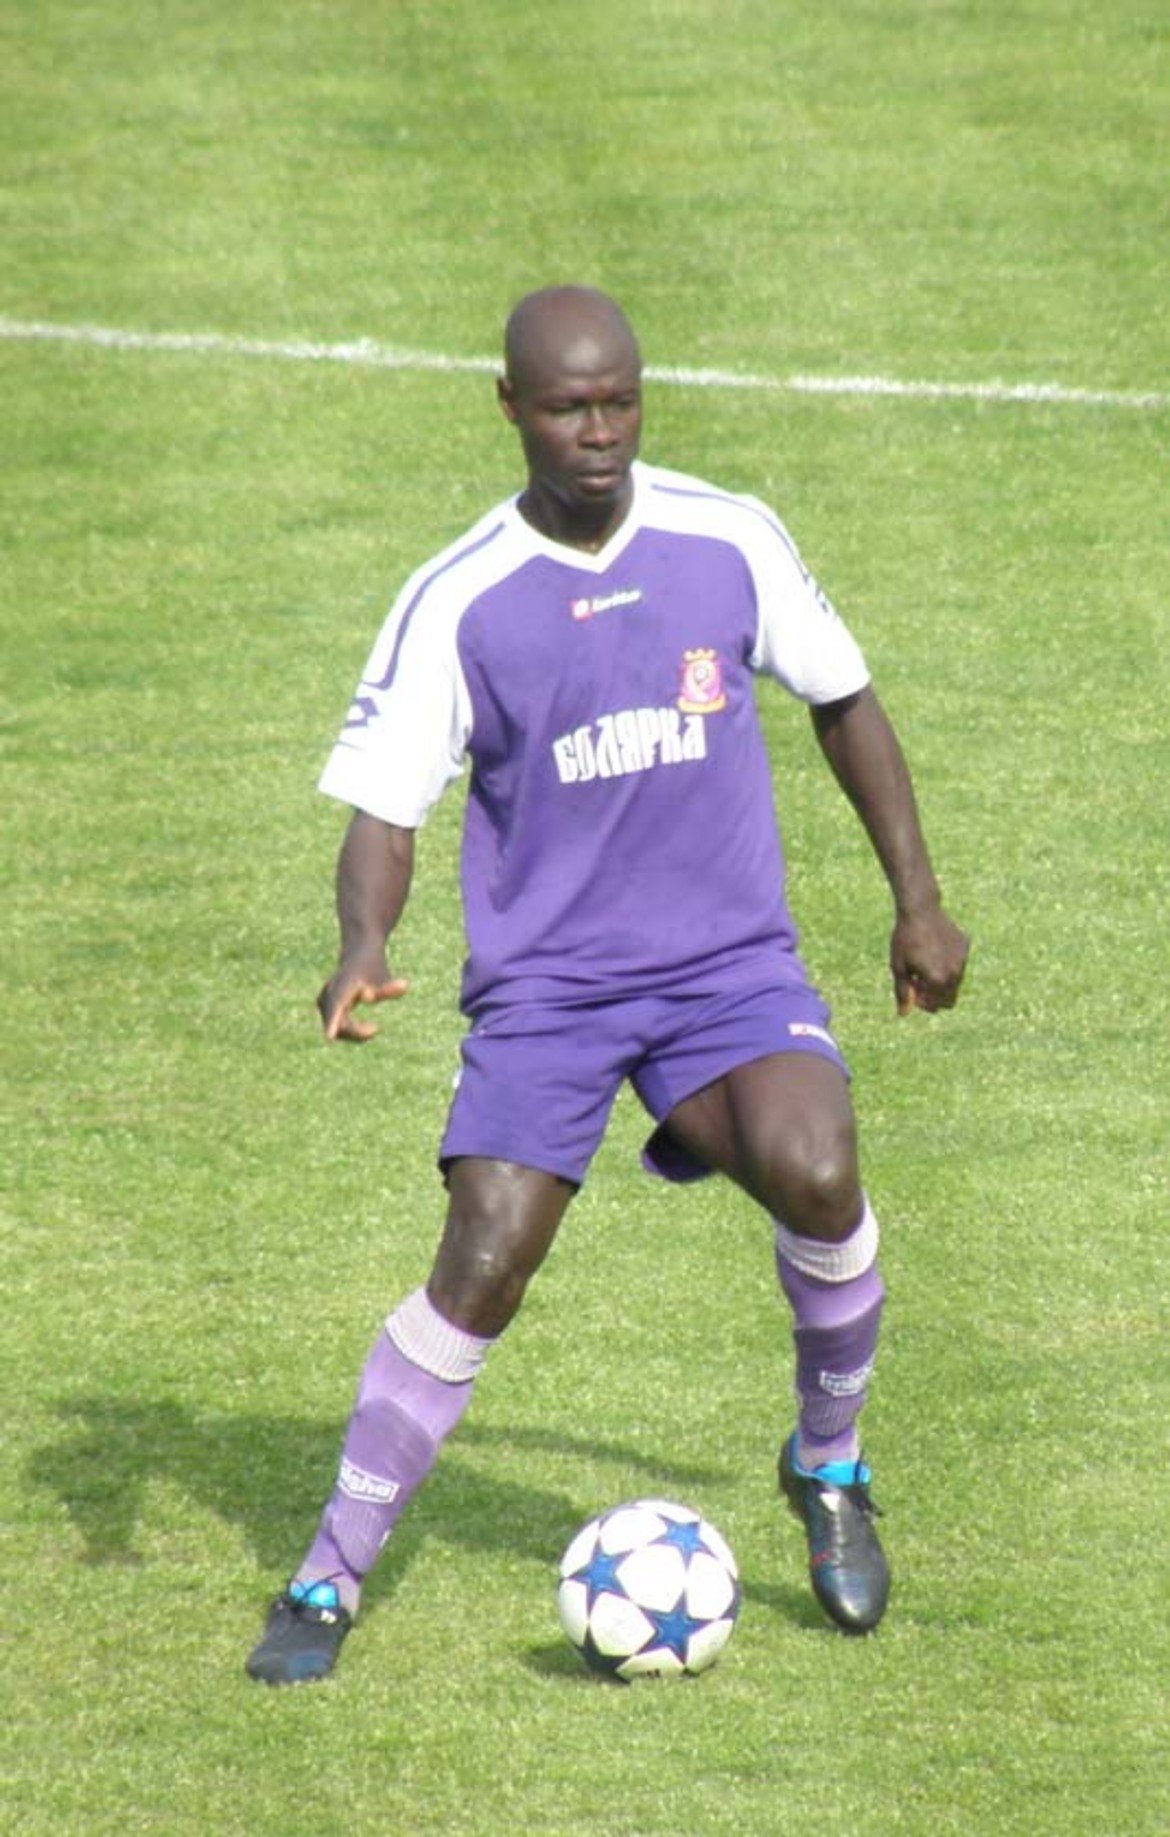 Екундайо Джайеоба (централен нападател) 
Нигерийската перла игра само в квалификационните мачове за Купата на УЕФА срещу Киелце. След Левски изкара половин сезон в Израел, но през 2009-а се завърна на „Герена“. После кариерата му тръгна категорично надолу и играеше предимно в Б група. Днес е на 37 и се състезава за тима на Струмска Слава.
